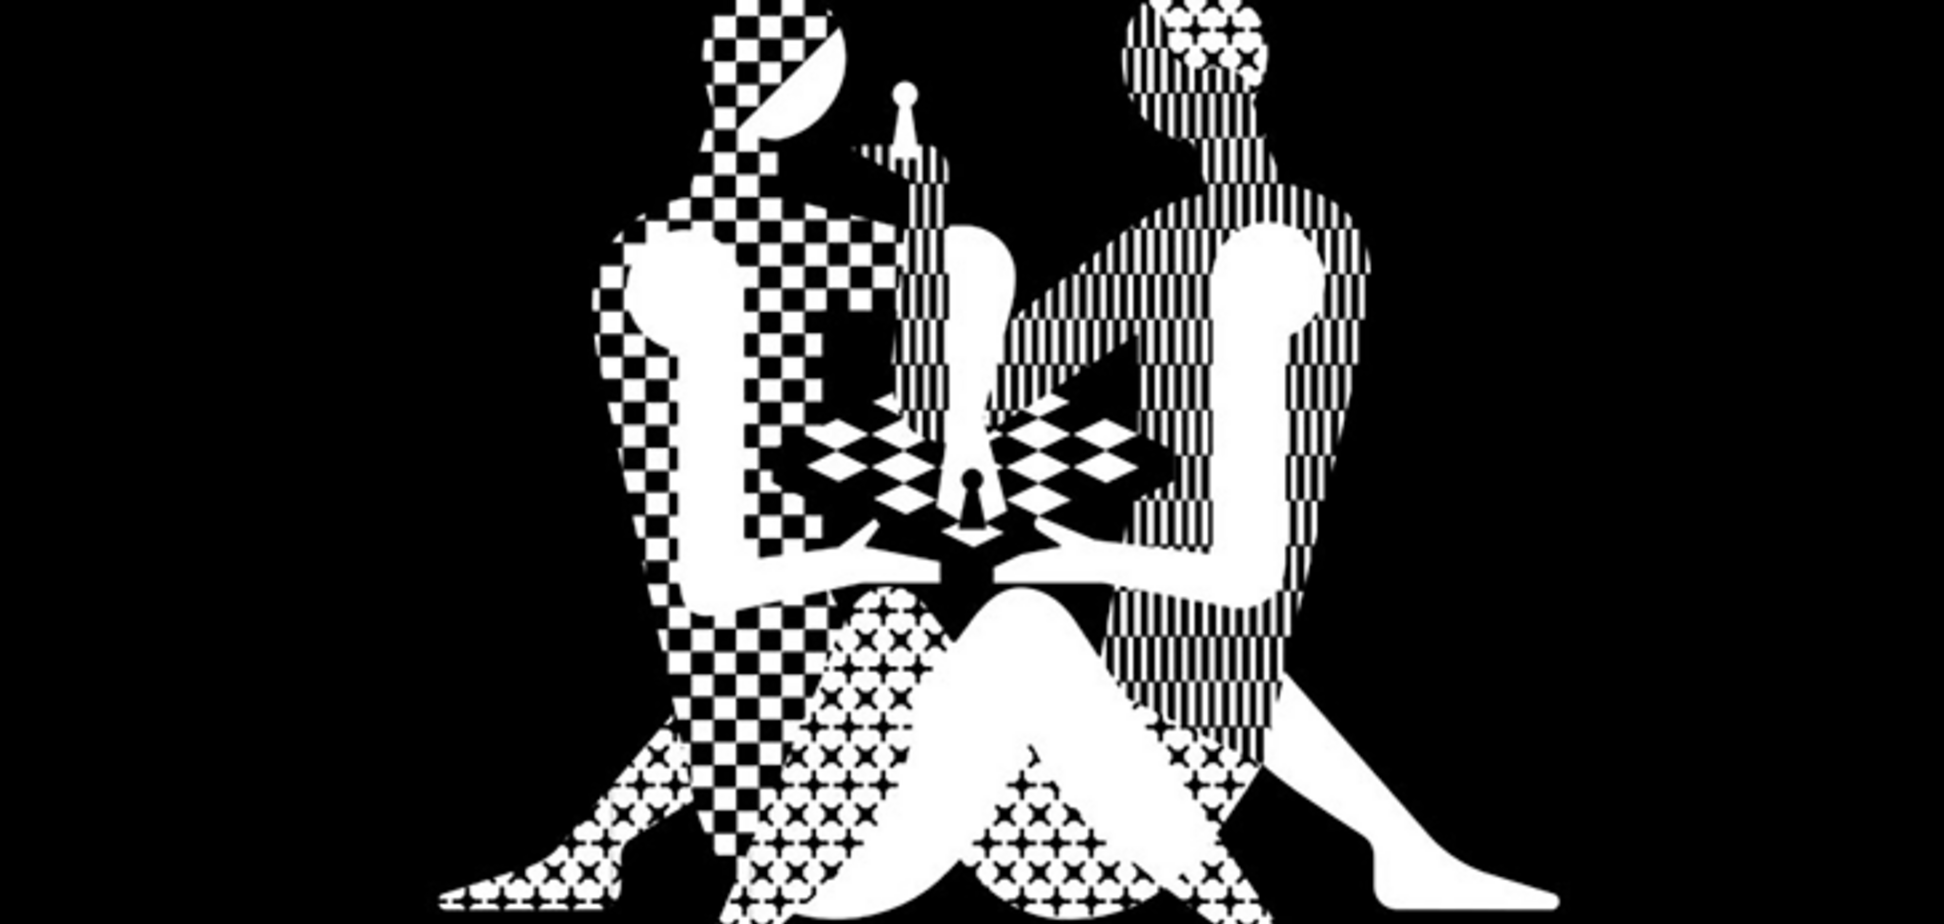 Поза з Камасутри: росіяни представили безглуздий логотип до чемпіонату світу з шахів - фотофакт